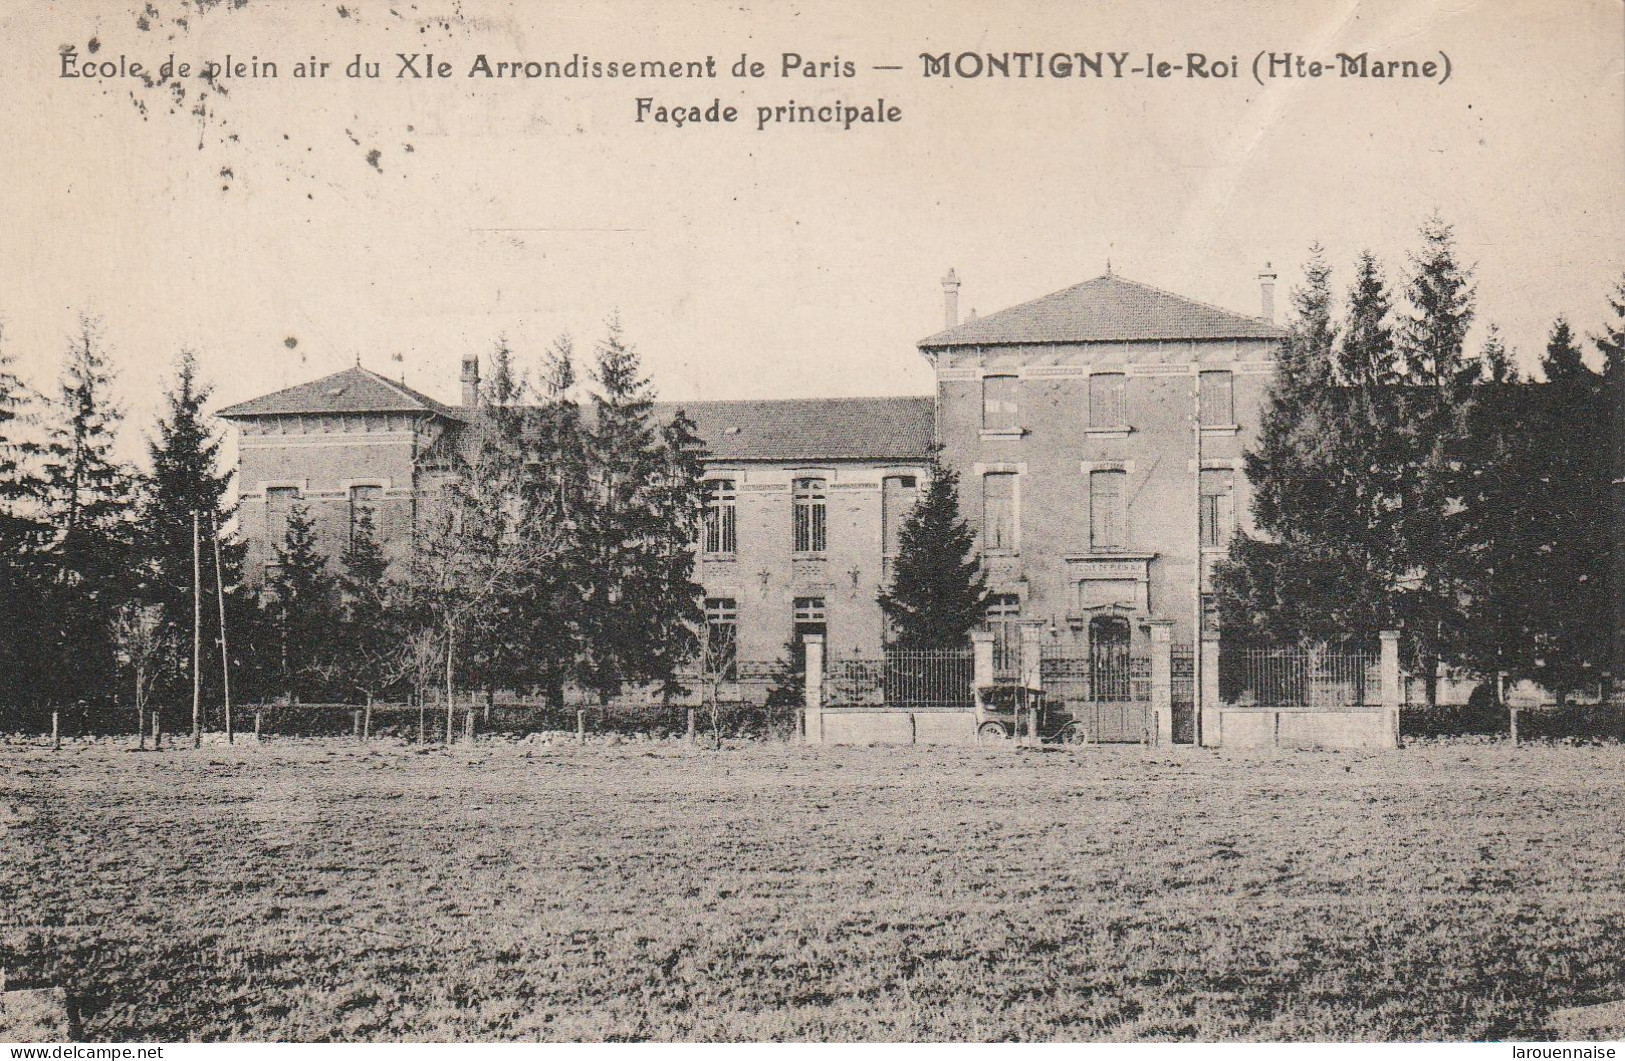 52 - MONTIGNY LE ROI - Ecole De Plein Air Du XIe Arrondissement De Paris - Façade Principale - Montigny Le Roi